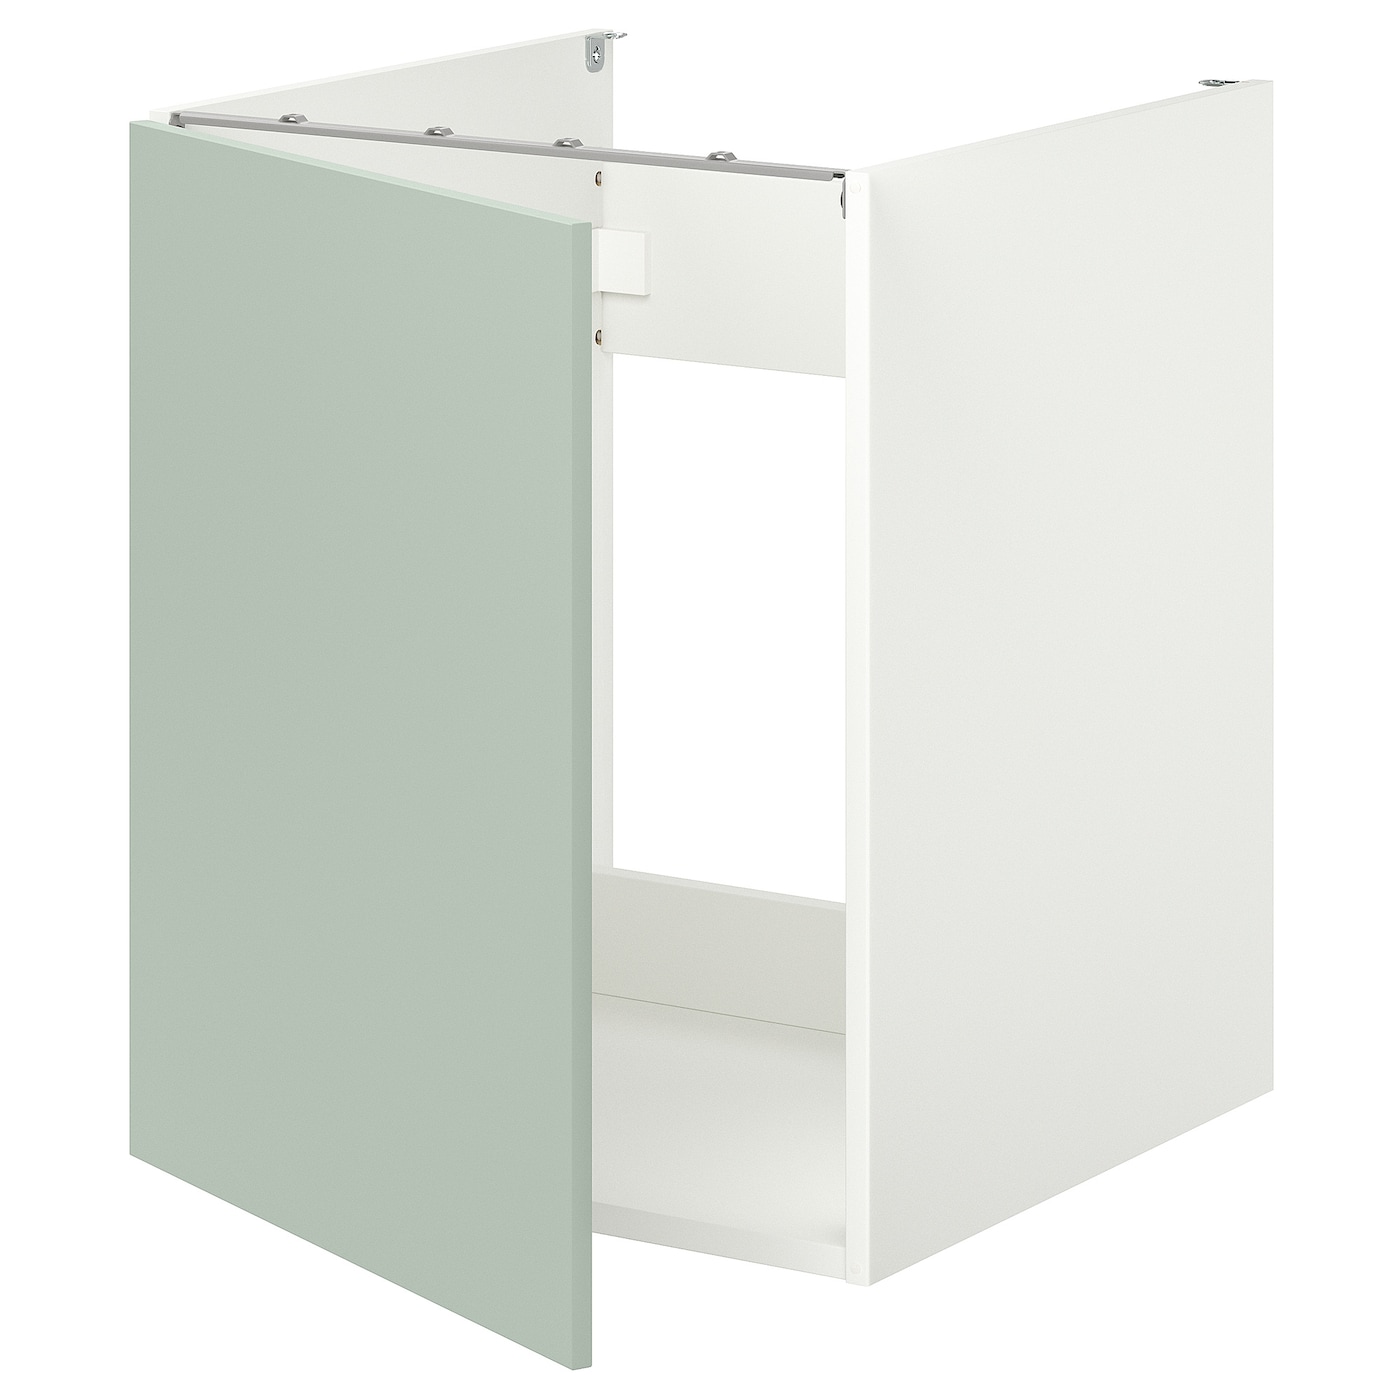 IKEA ENHET Szafka pod zlewozm/drzwi, biały/blady szaro-zielony, 60x62x75 cm